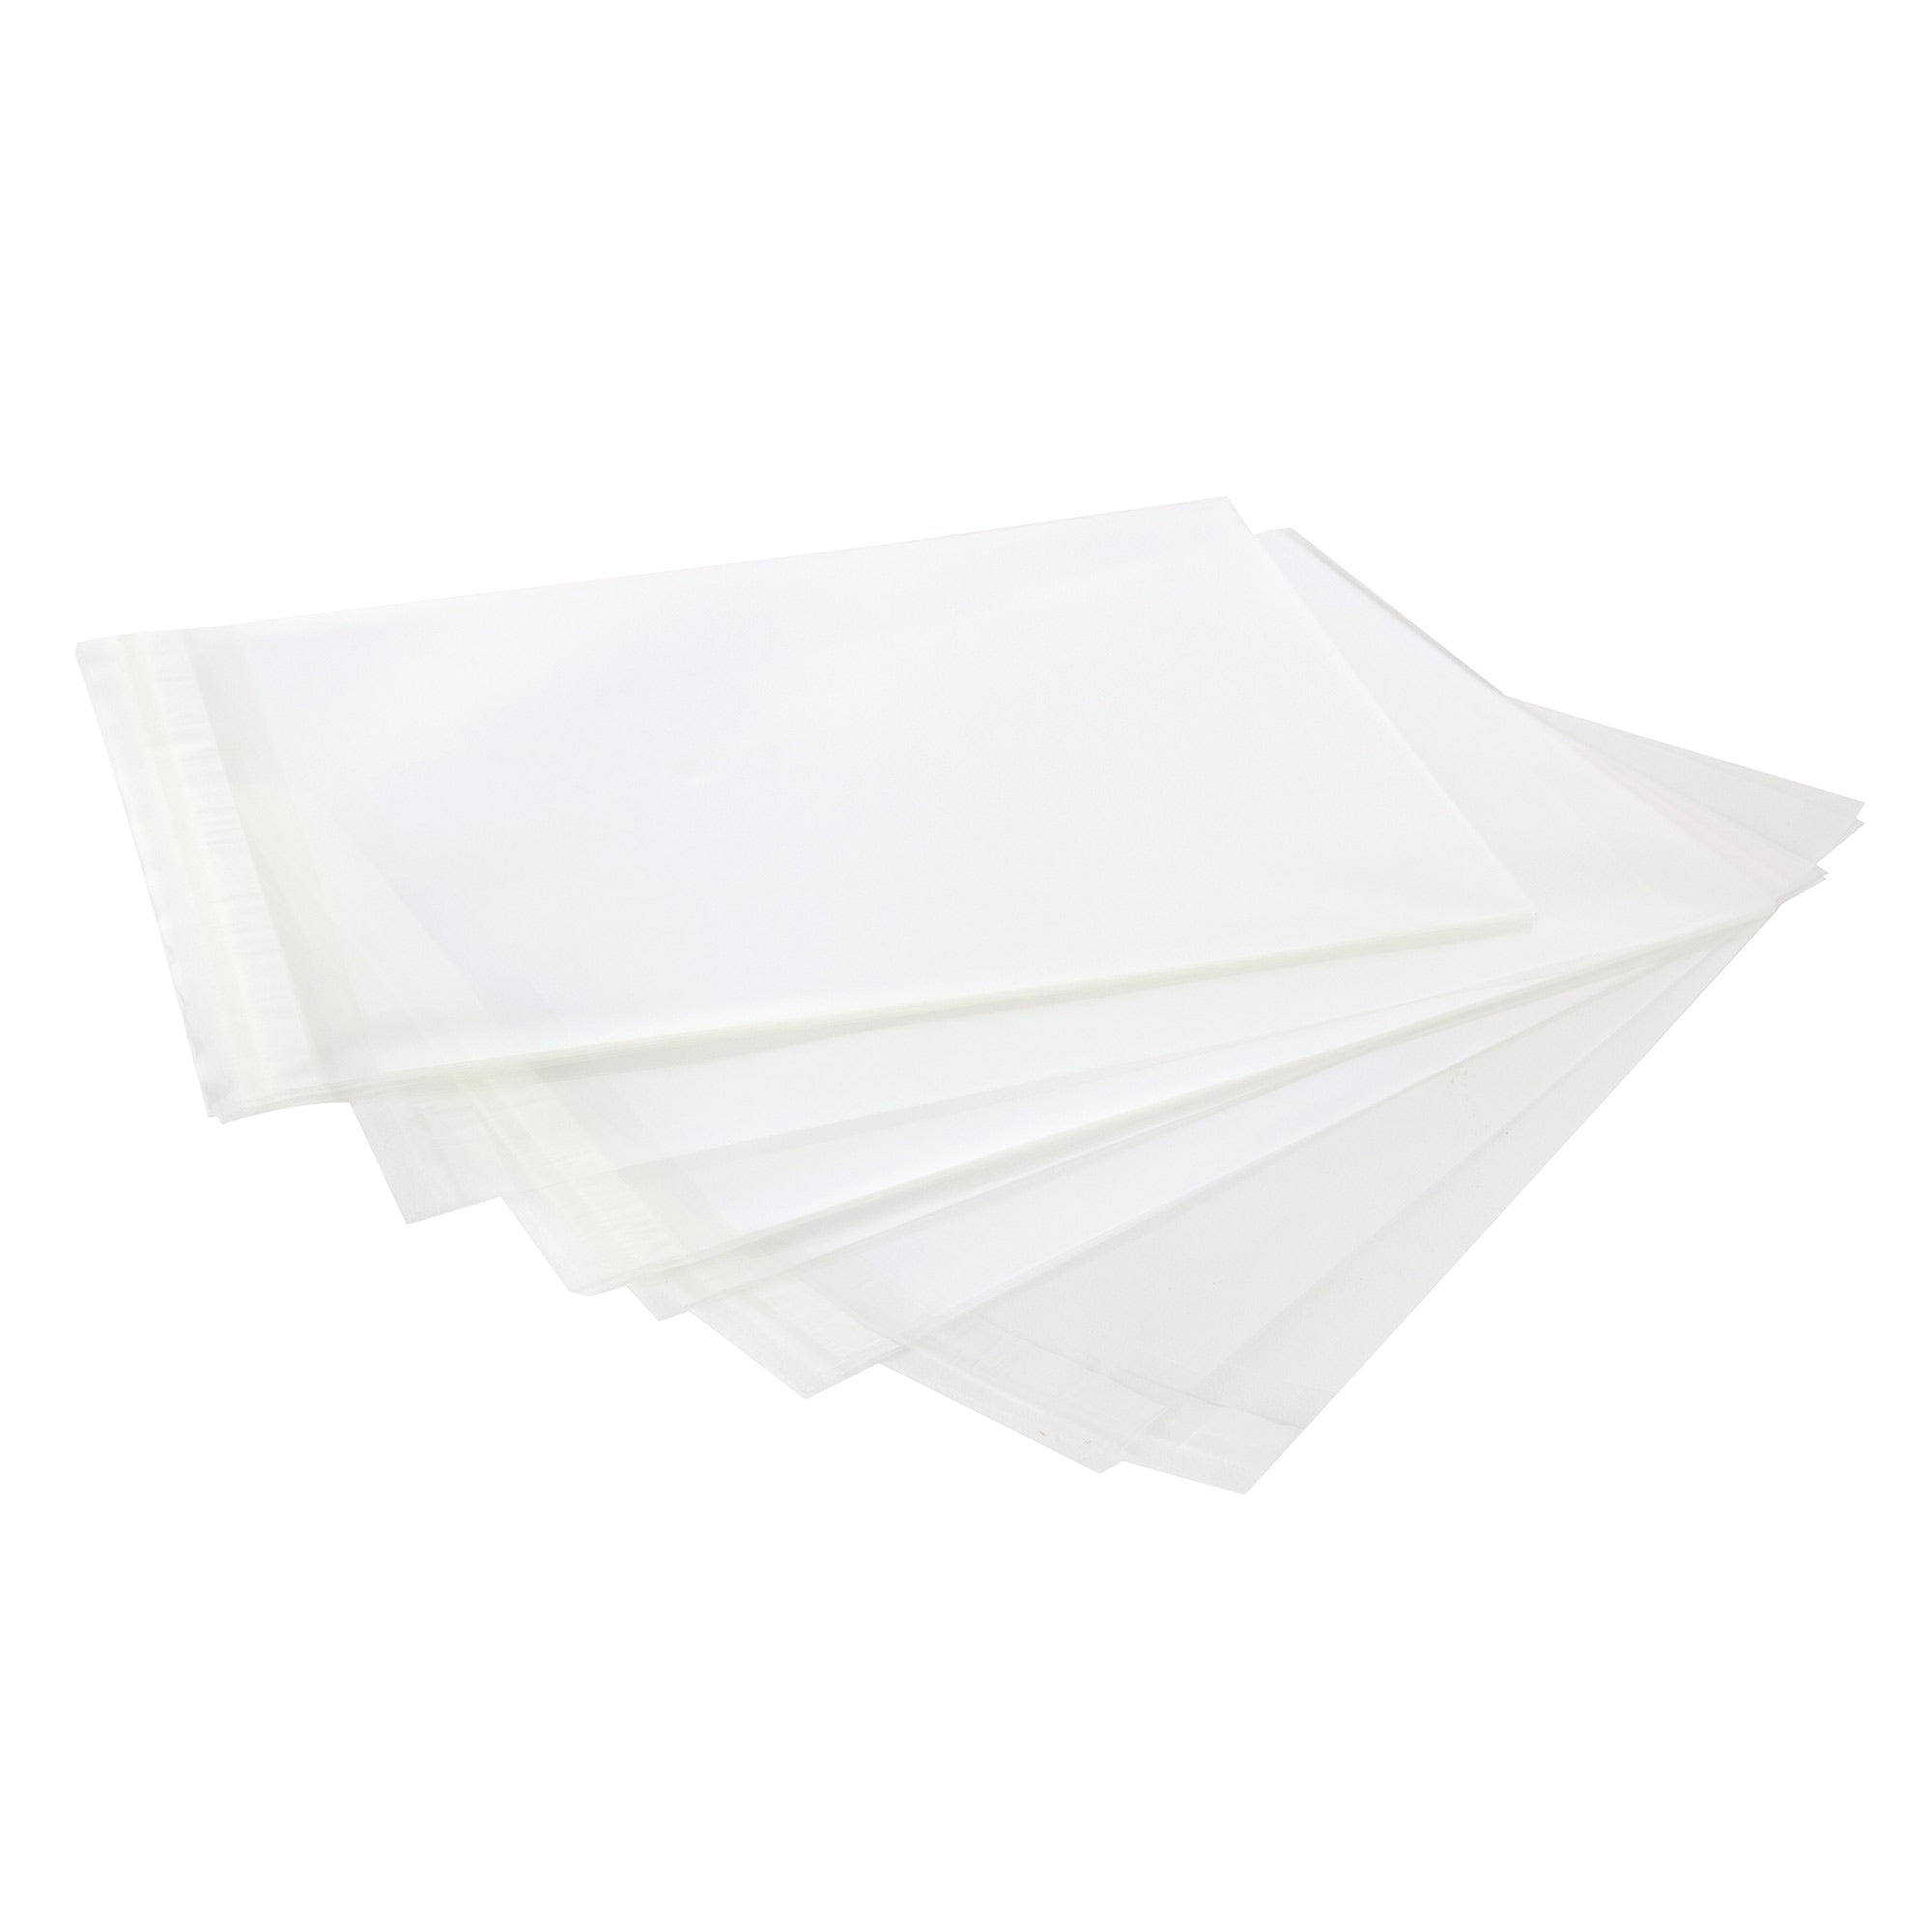 Enveloppes transparentes - Blanc (Transparent-Marbré)~110 x 220 mm (D